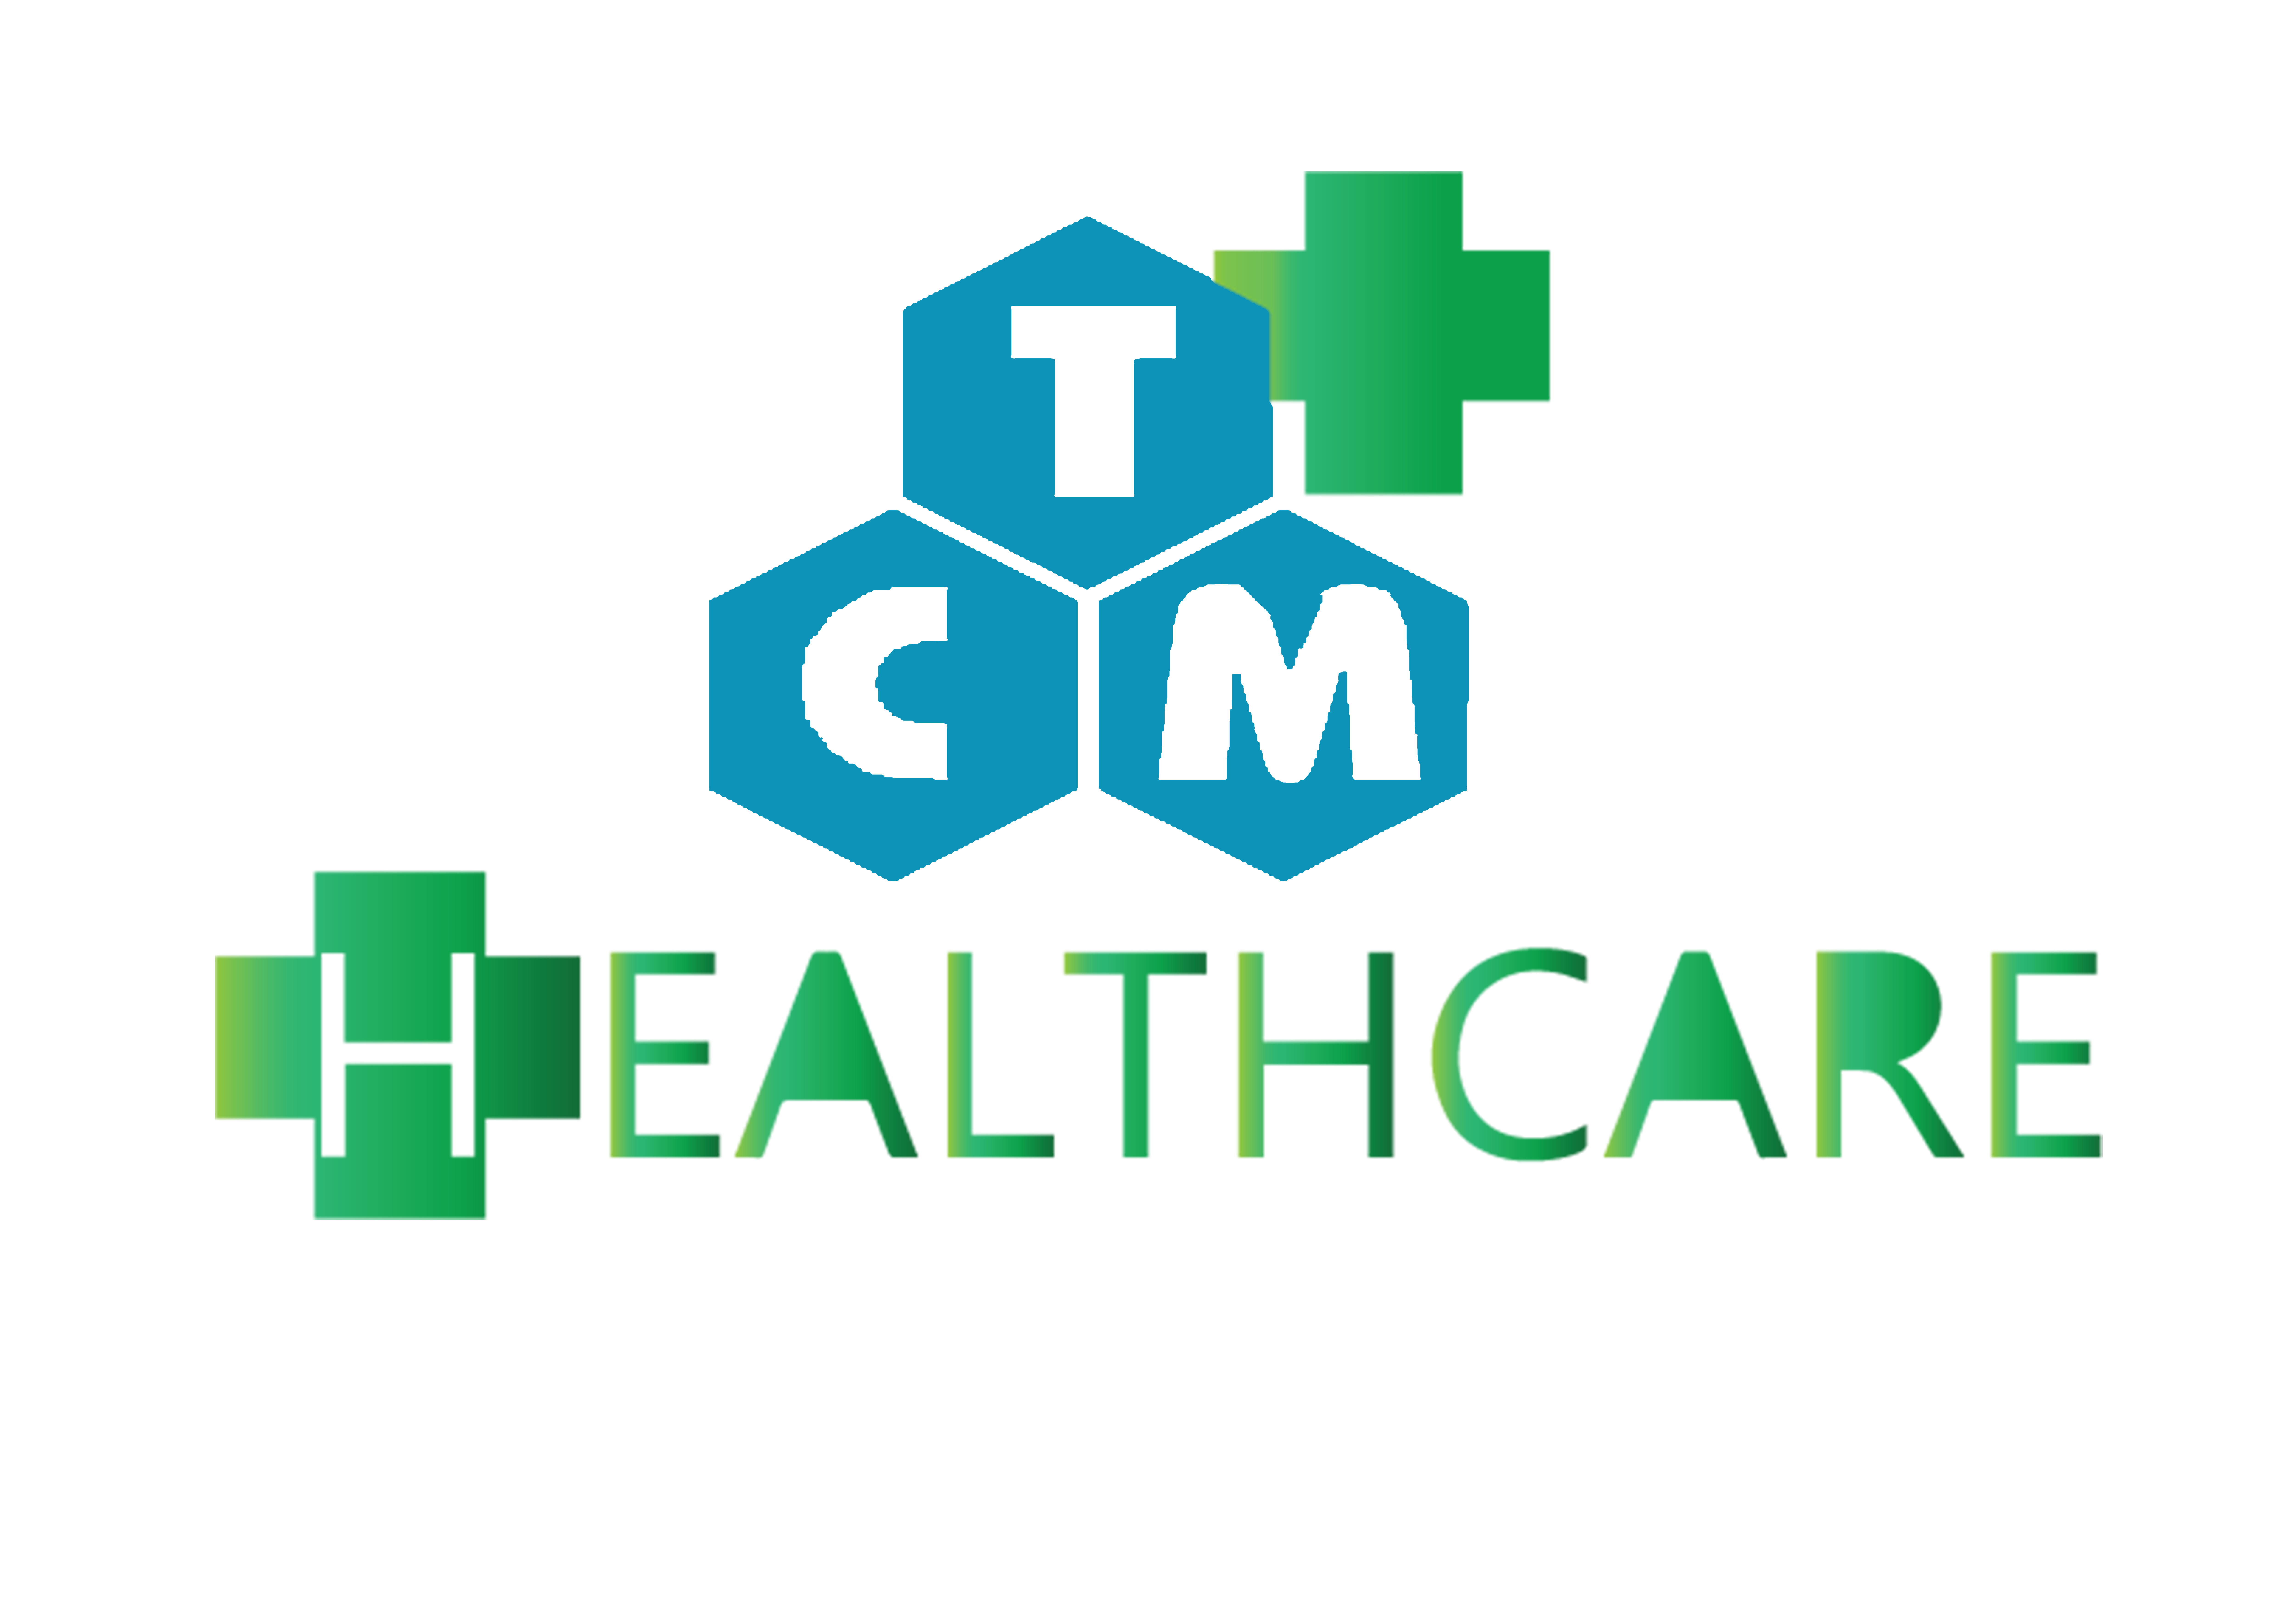 TCM HEALTHCARE